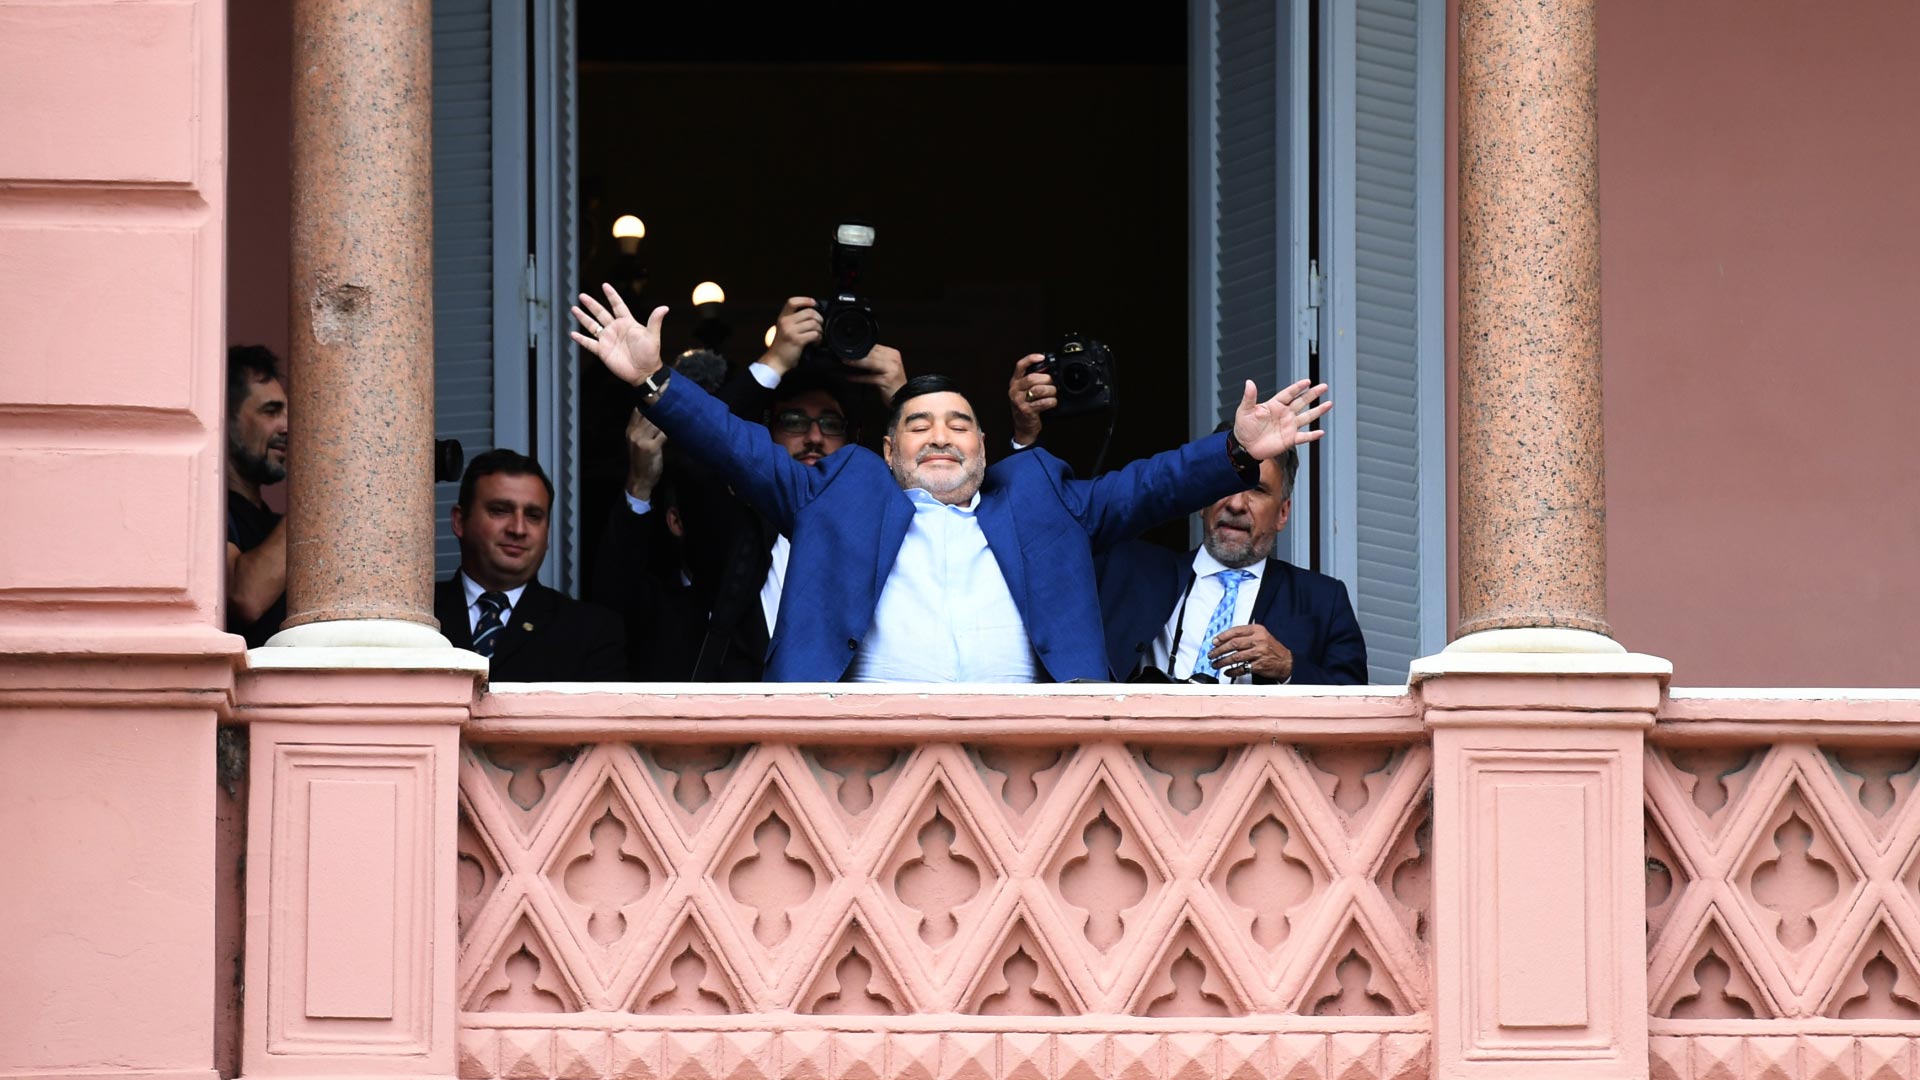 Diego saluda a los fanáticos sorprendidos que lo detectaron desde la Plaza de Mayo. Detrás suyo, Víctor Bugge